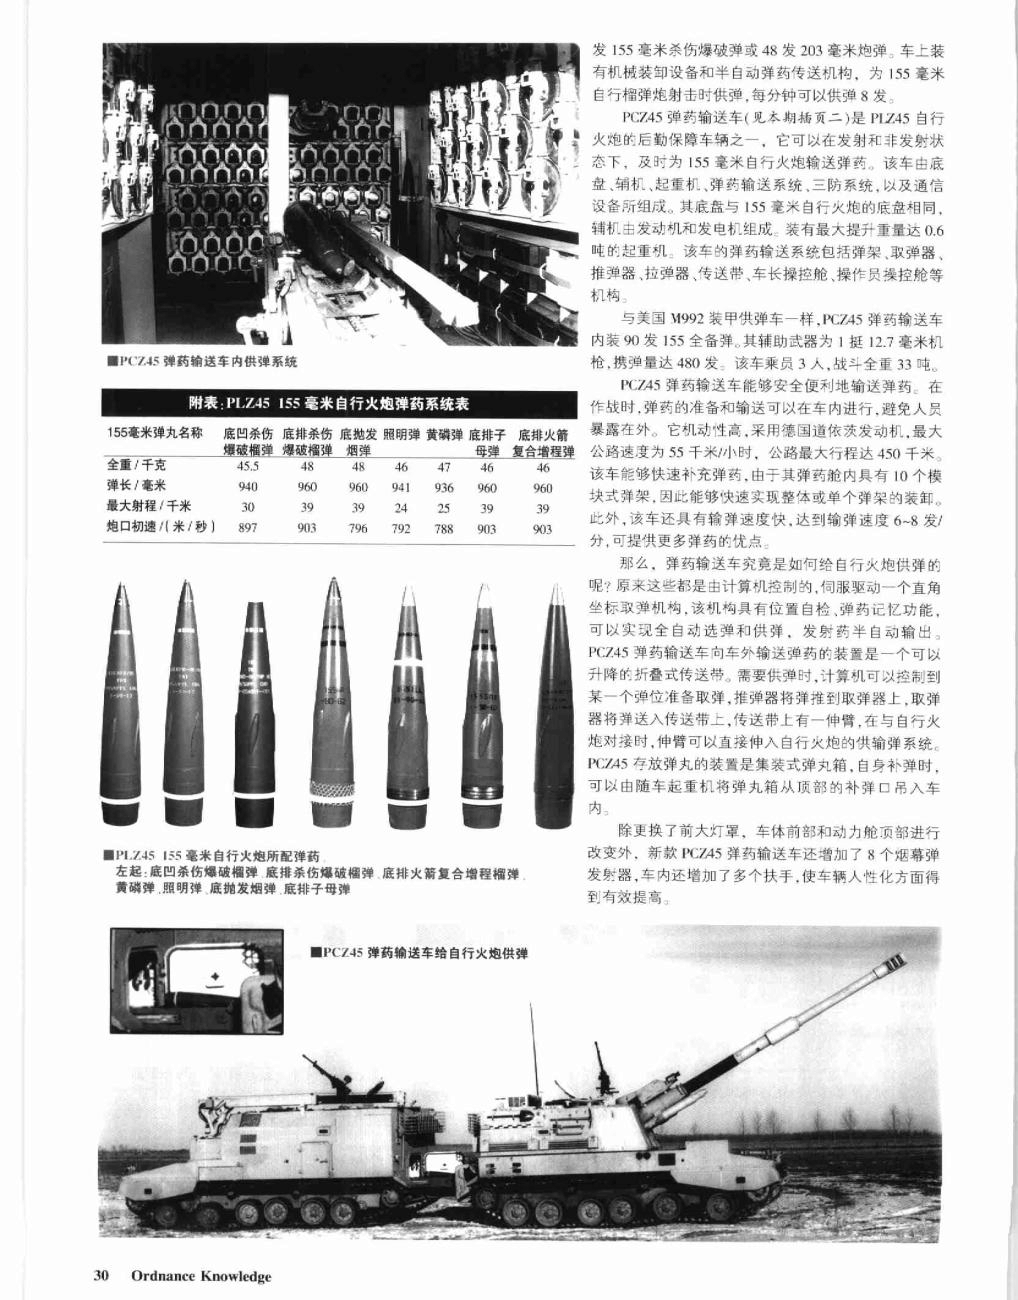 中国PLZ45 155毫米火炮家族新变化